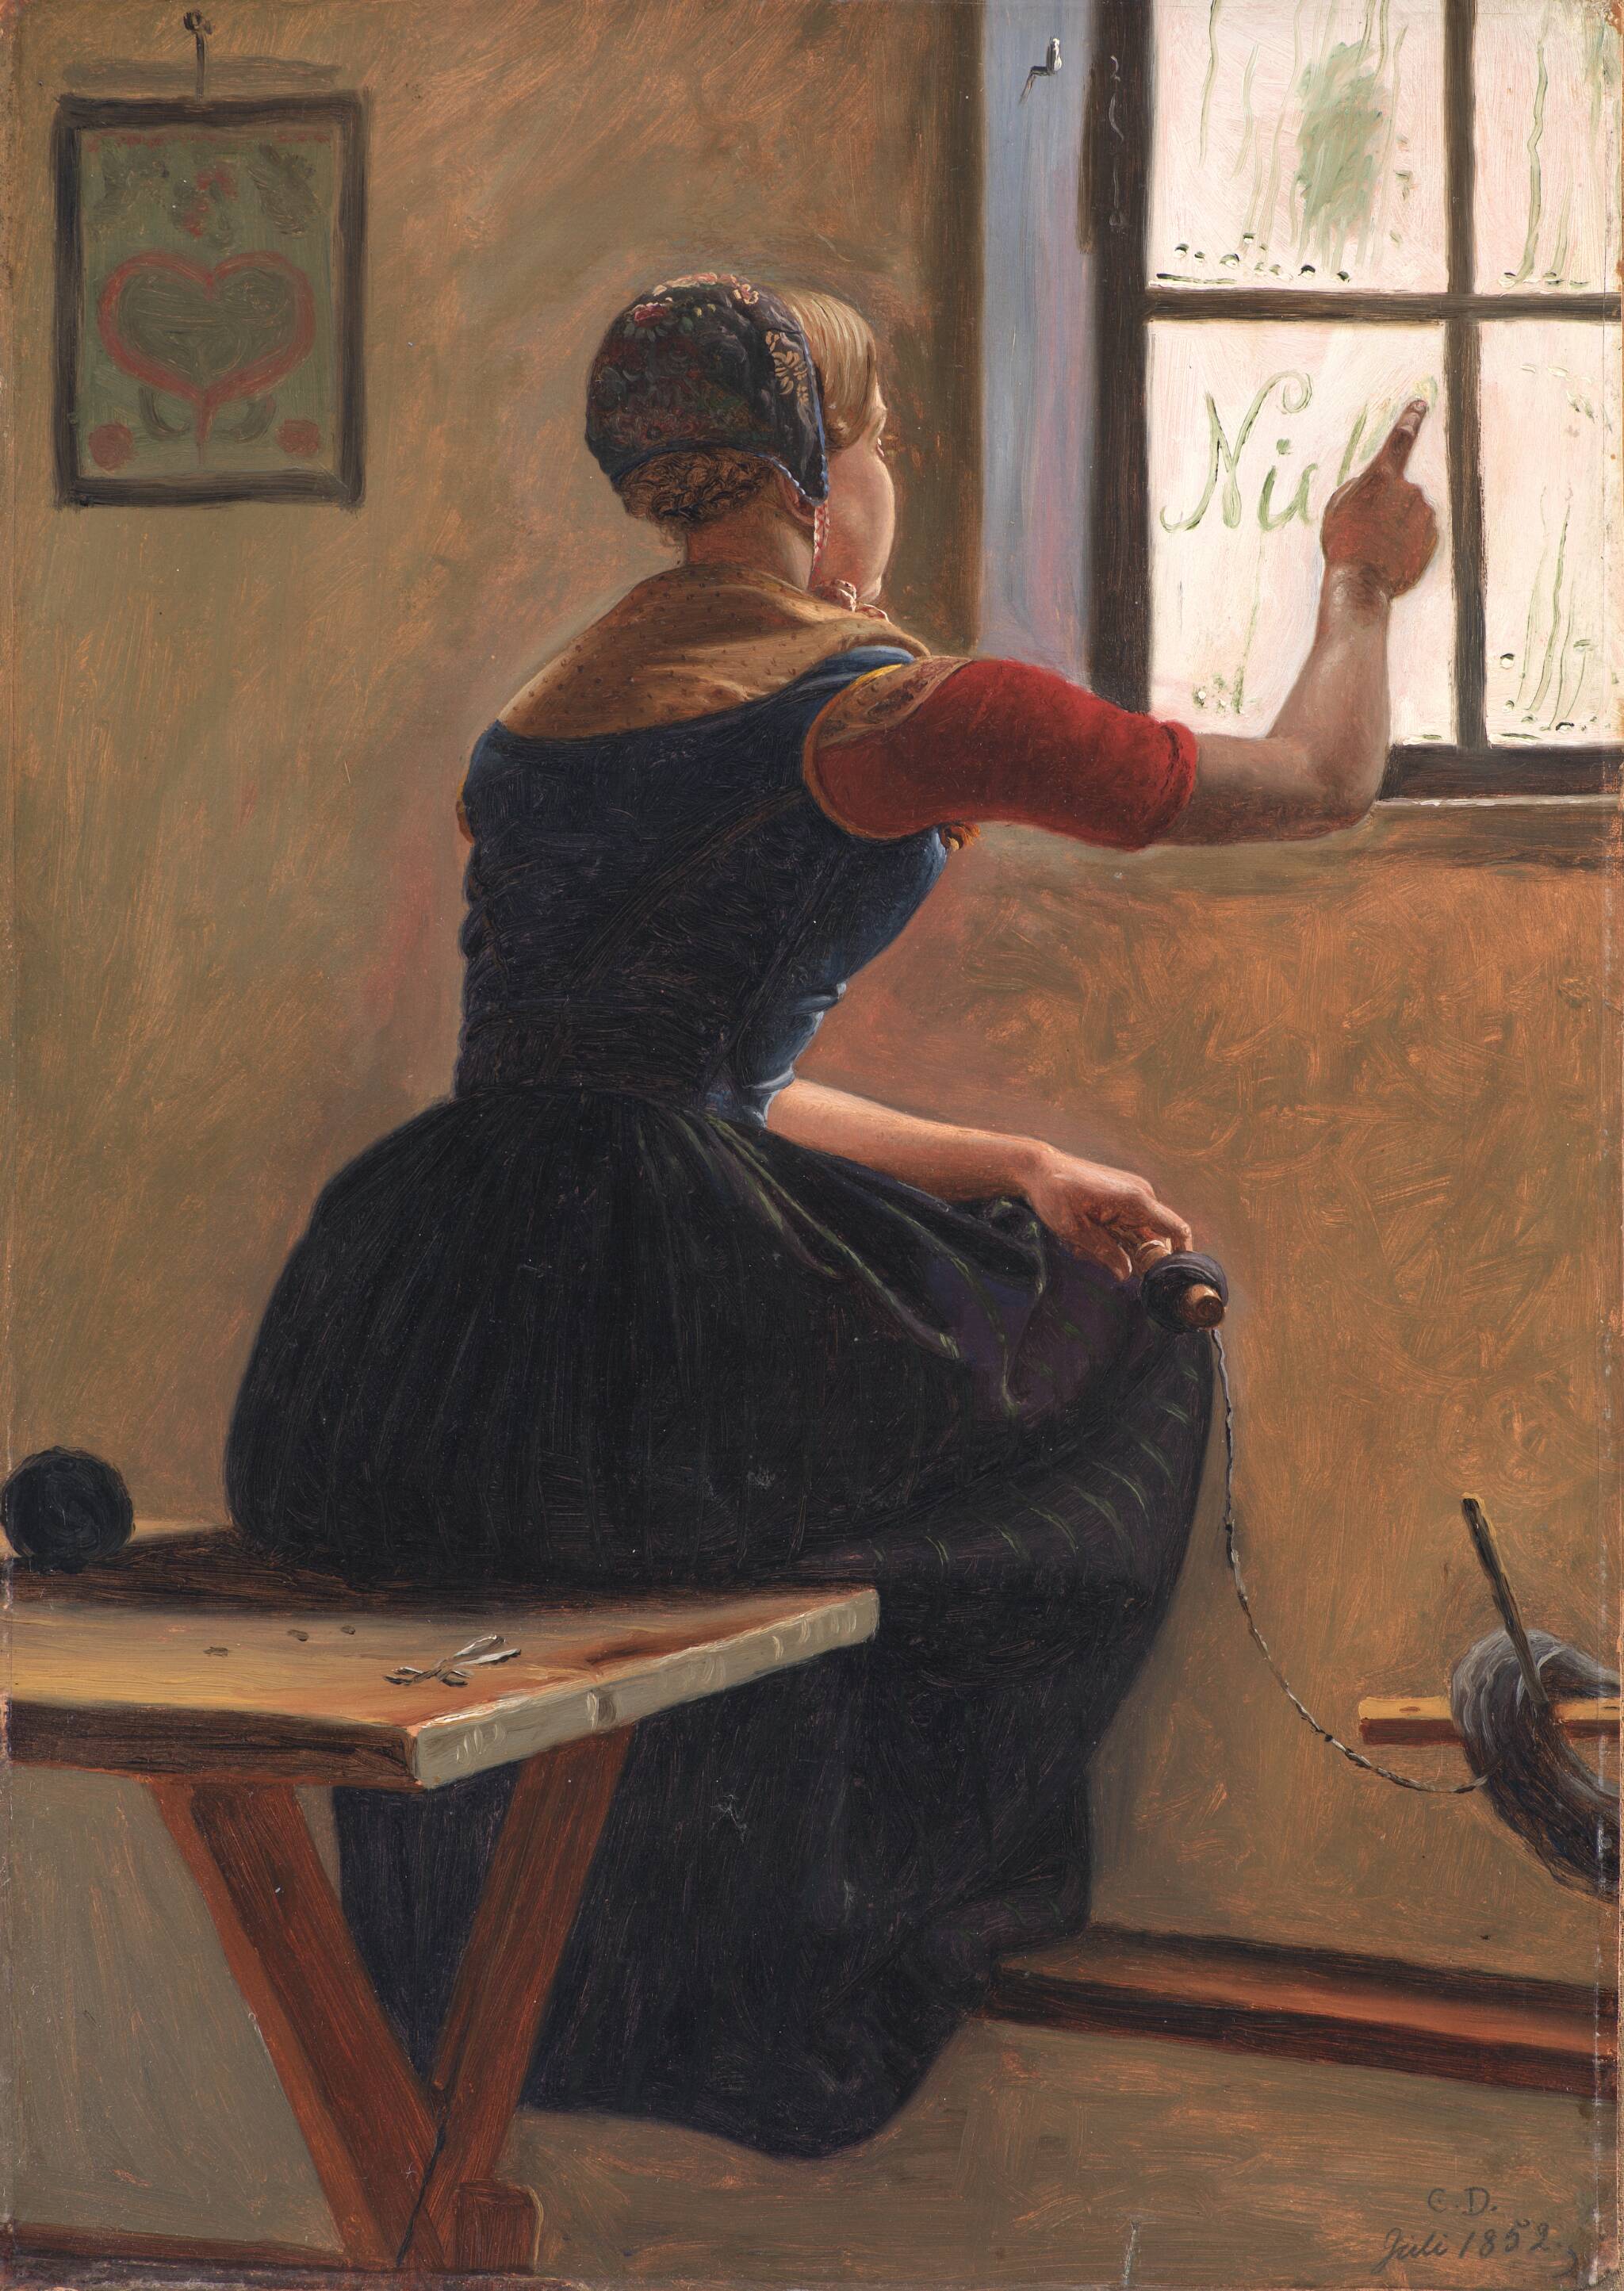 안개 낀 창문에 사랑하는 사람의 이름을 쓰는 유틀란트의 어린 소녀 by Christen Dalsgaard - 1852년 - 44.5 x 31.5 cm 